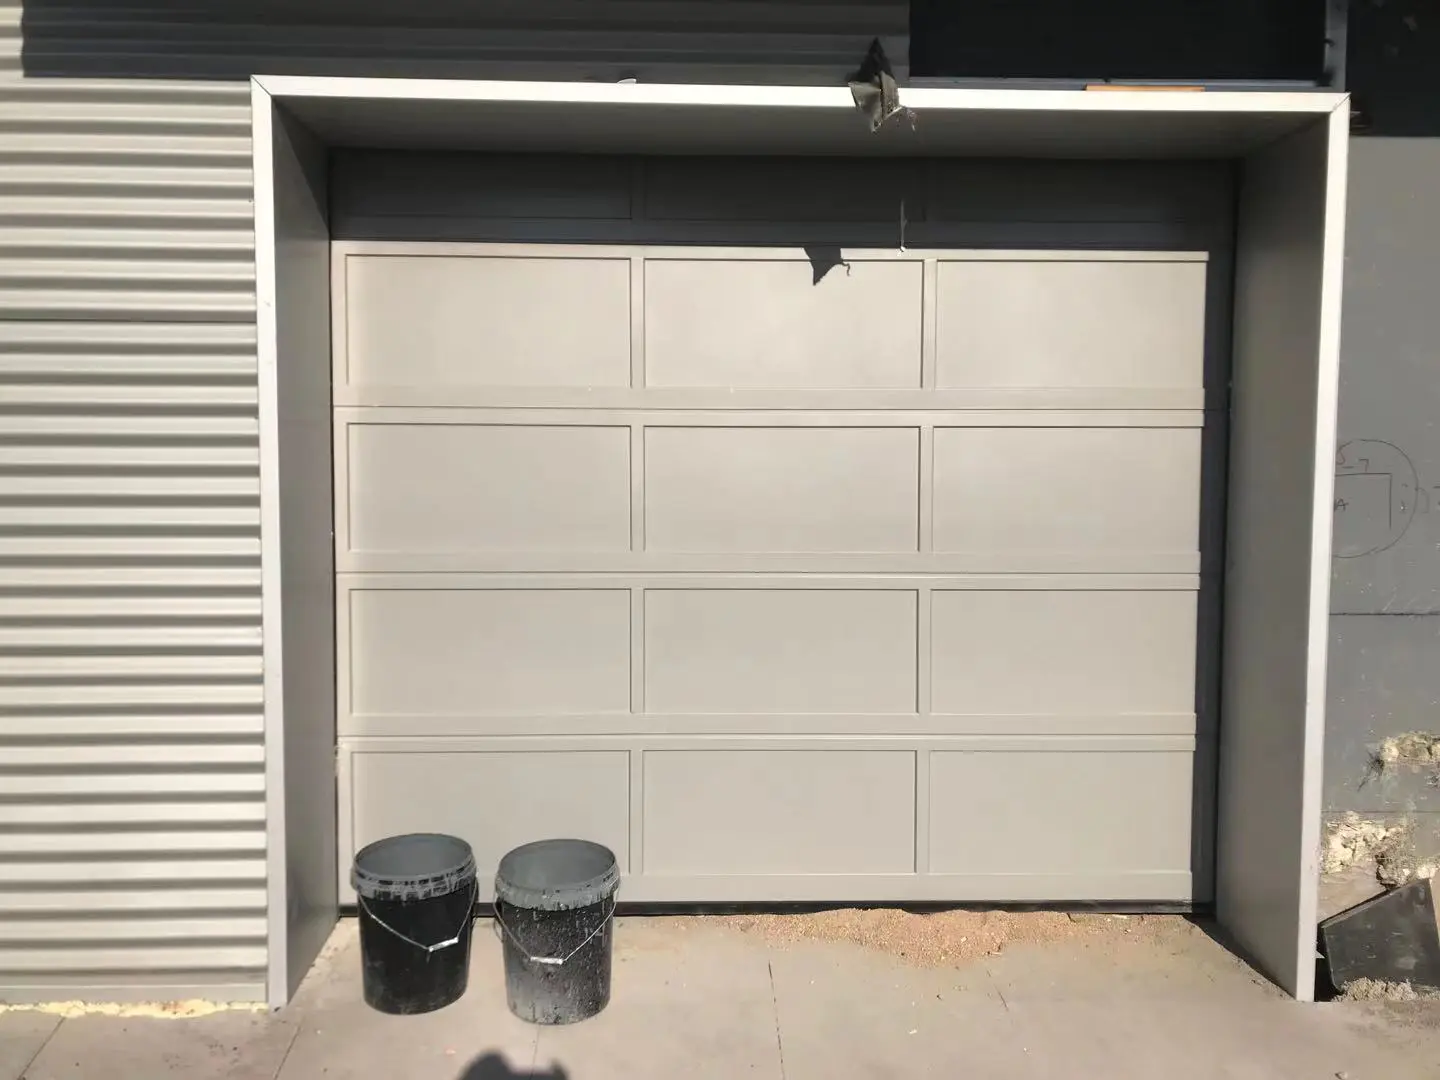 Non Insulated Garage Doors Complete Garage Doors Flush Facade Garage Doors